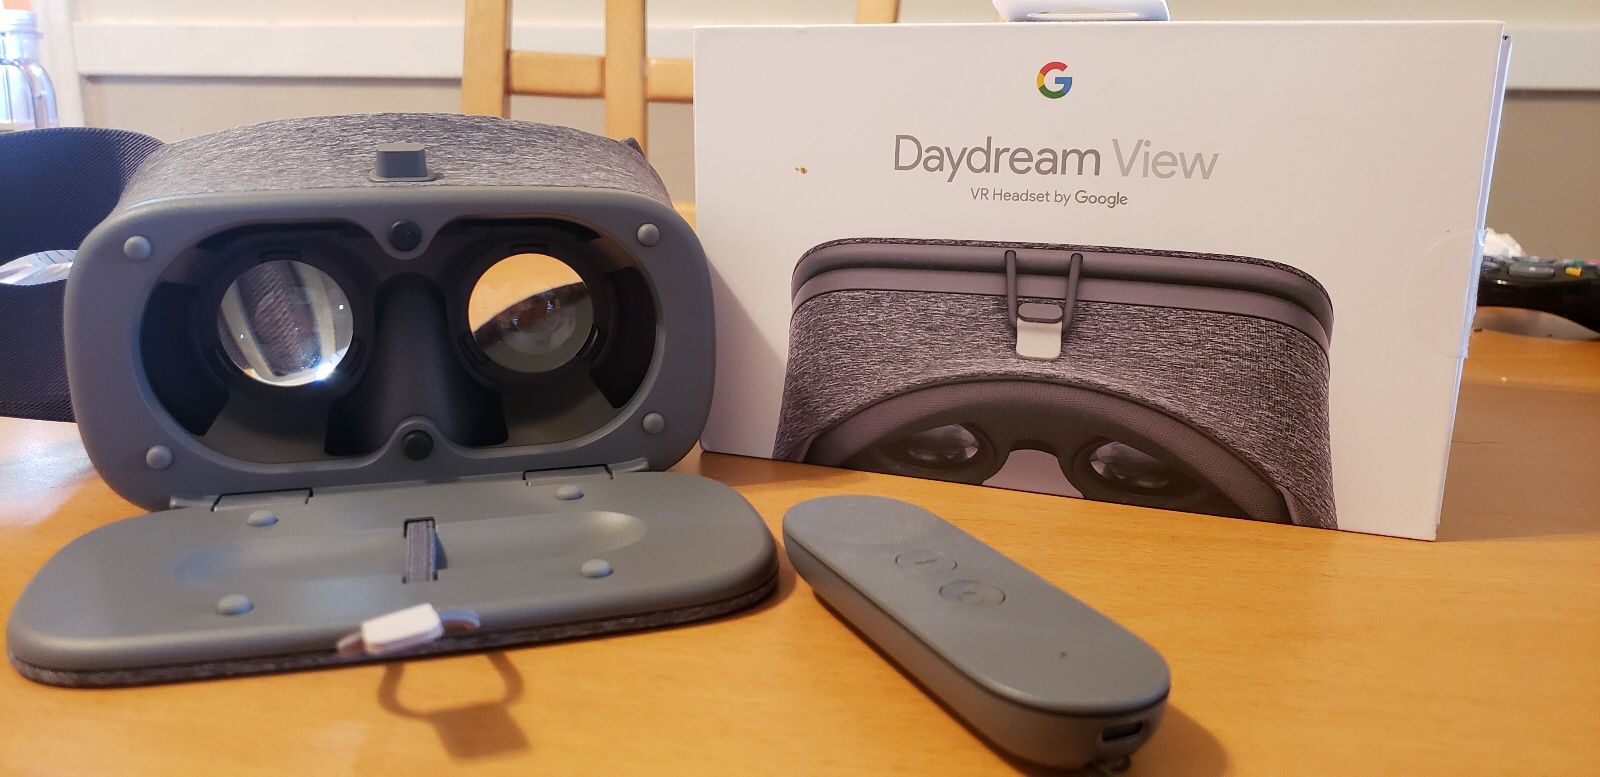 Google VR daydream viewer